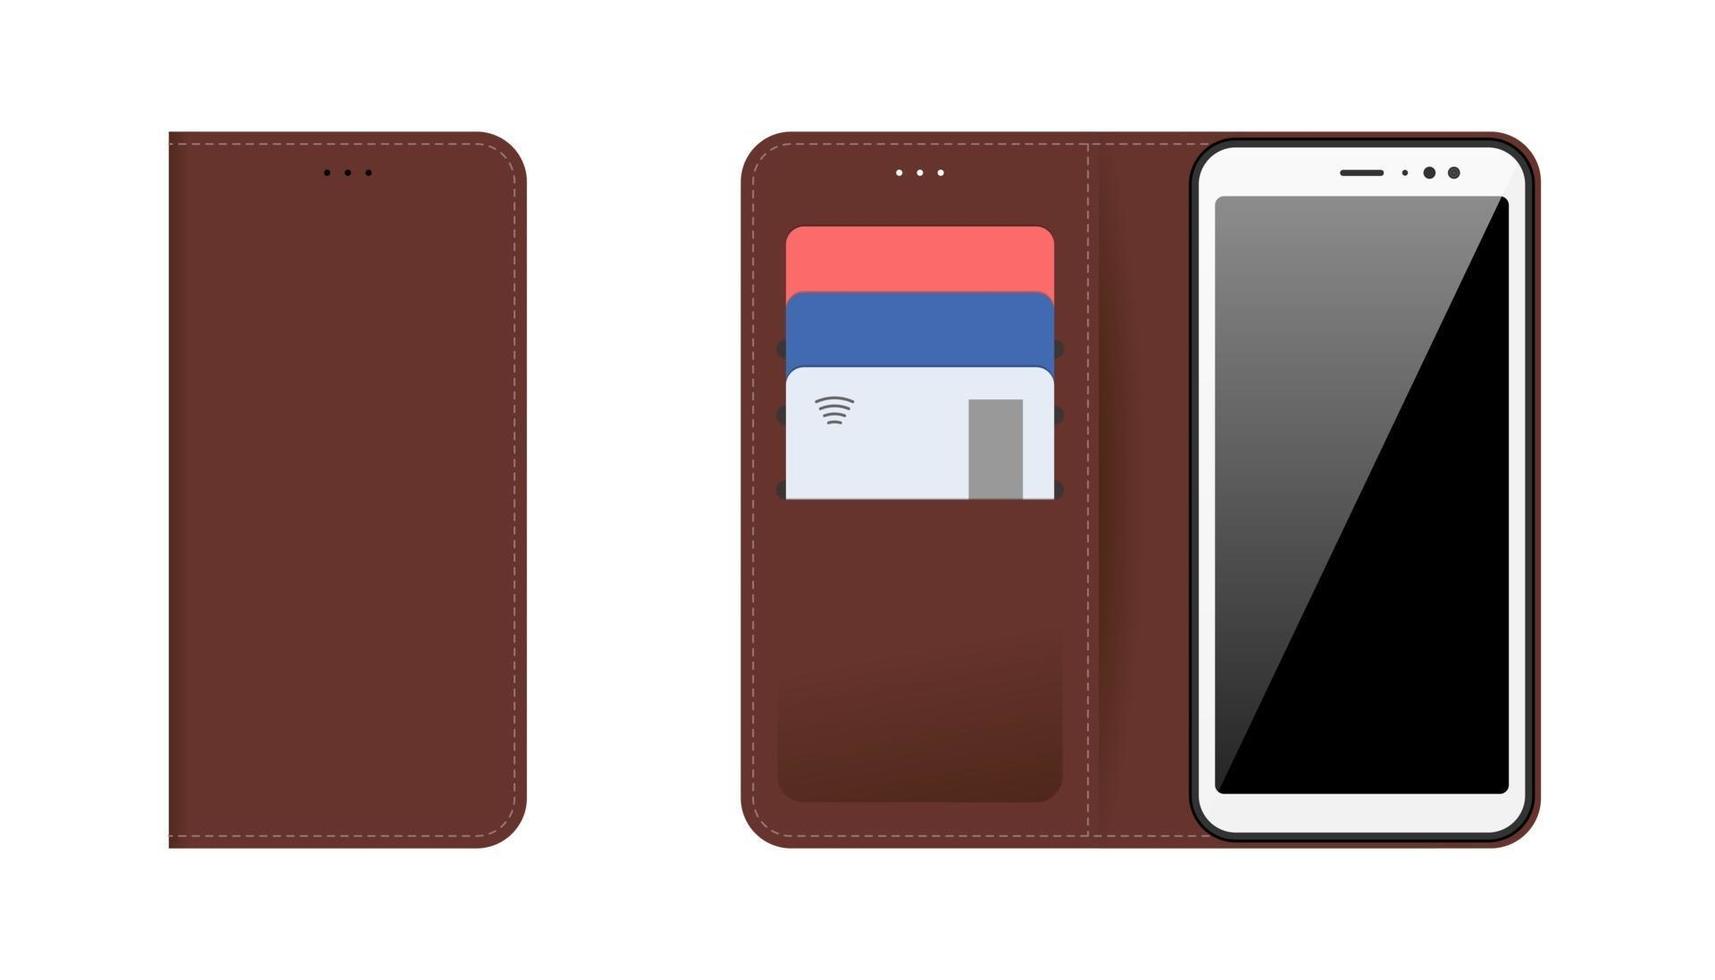 teléfono inteligente para dispositivos móviles con estuche de cuero cosido marrón abierto y cerrado, tarjetas bancarias de plástico en los bolsillos. vector moderno conjunto de aislamiento de ilustración plana